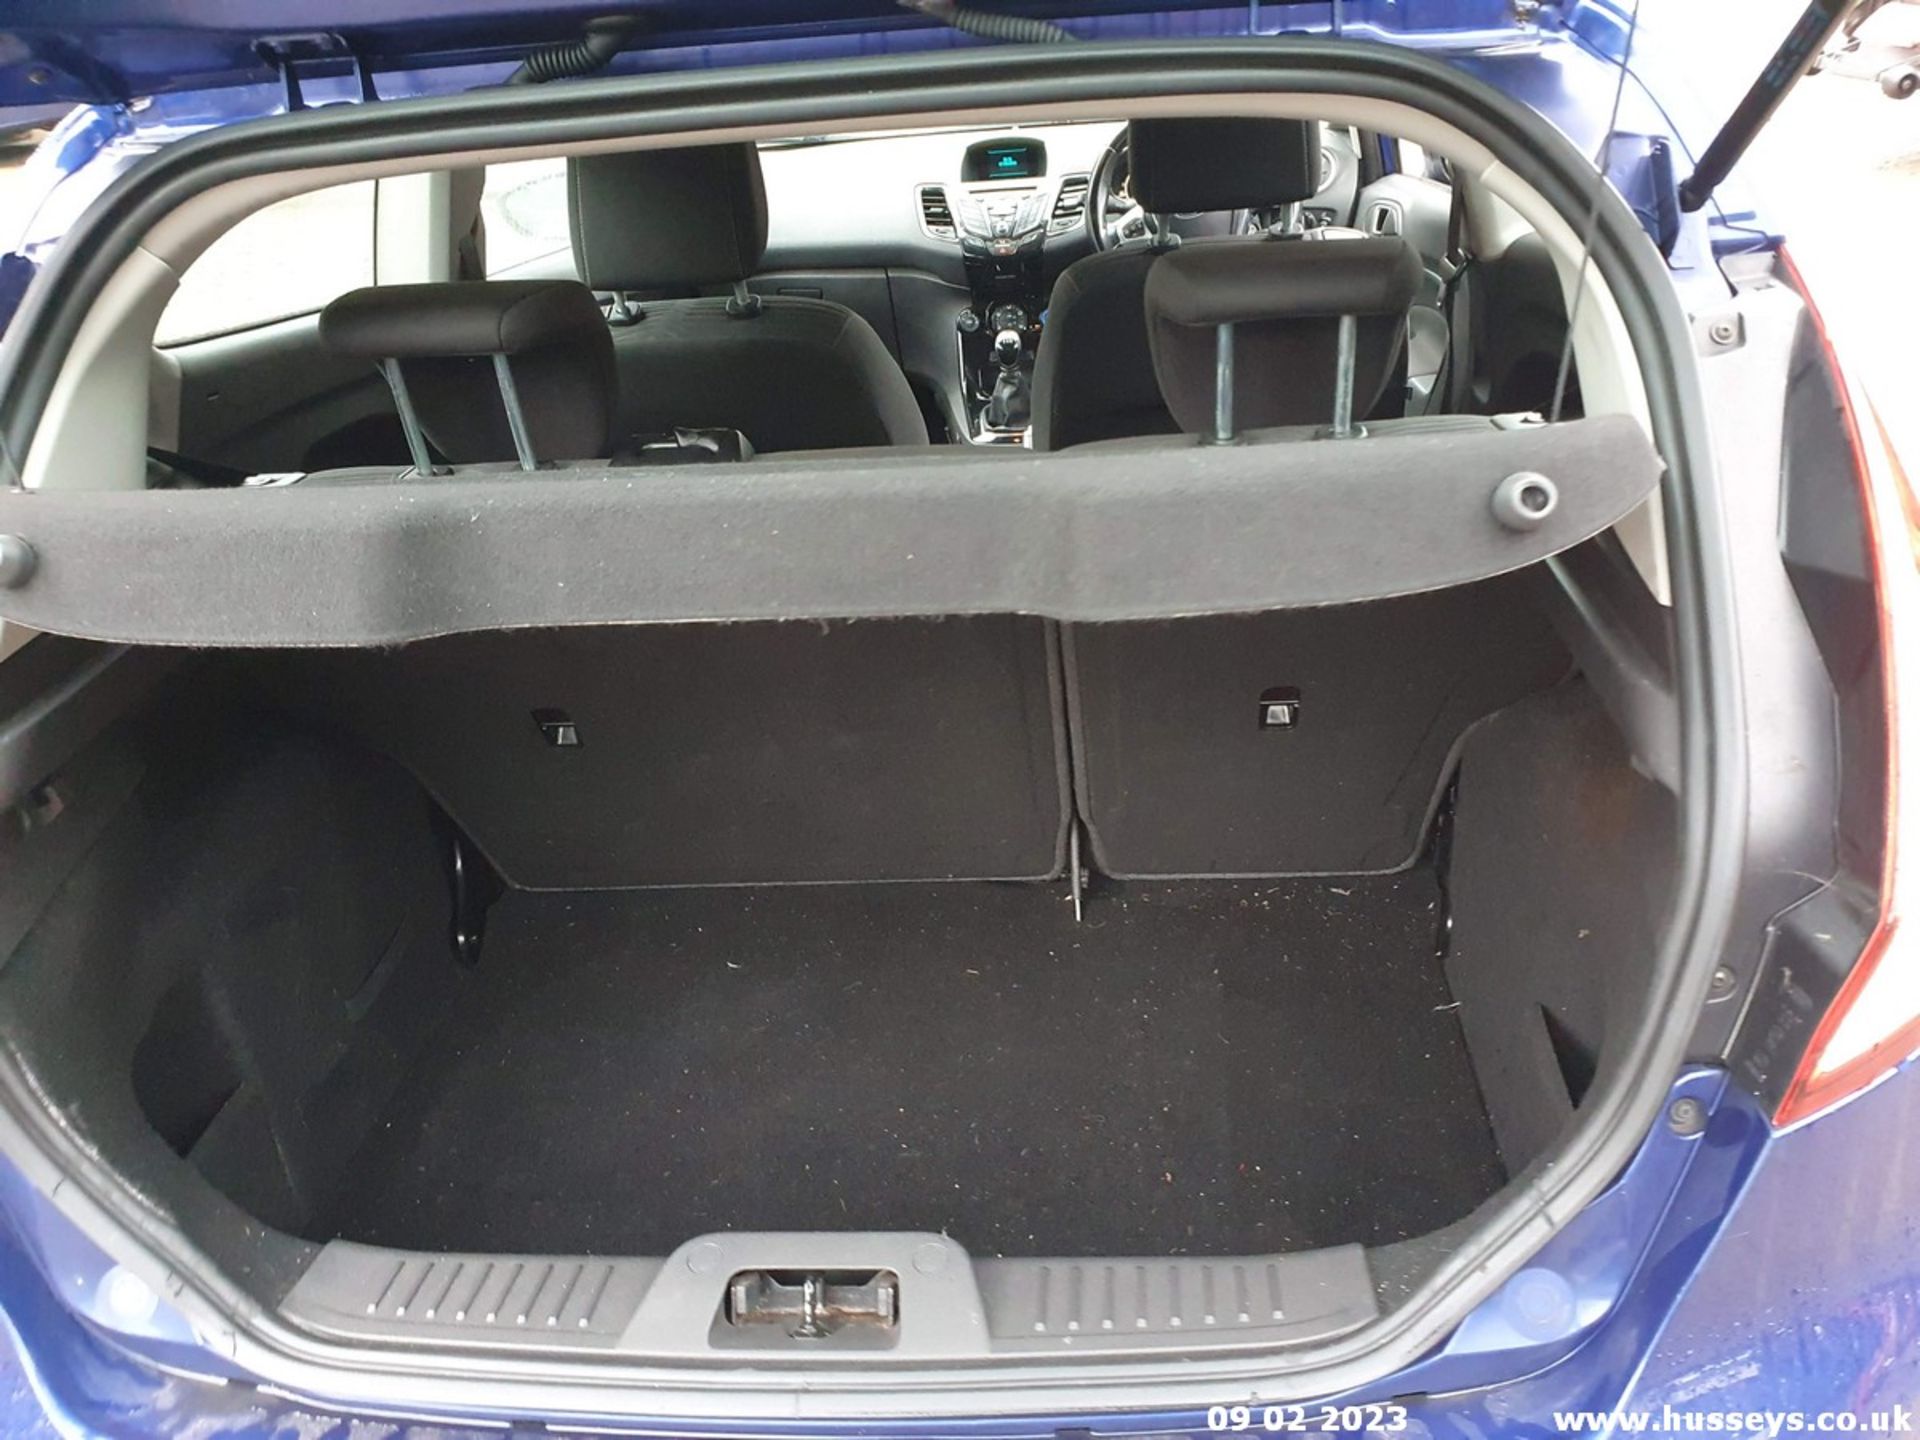 15/65 FORD FIESTA ZETEC TDCI - 1499cc 3dr Hatchback (Blue, 128k) - Image 26 of 48